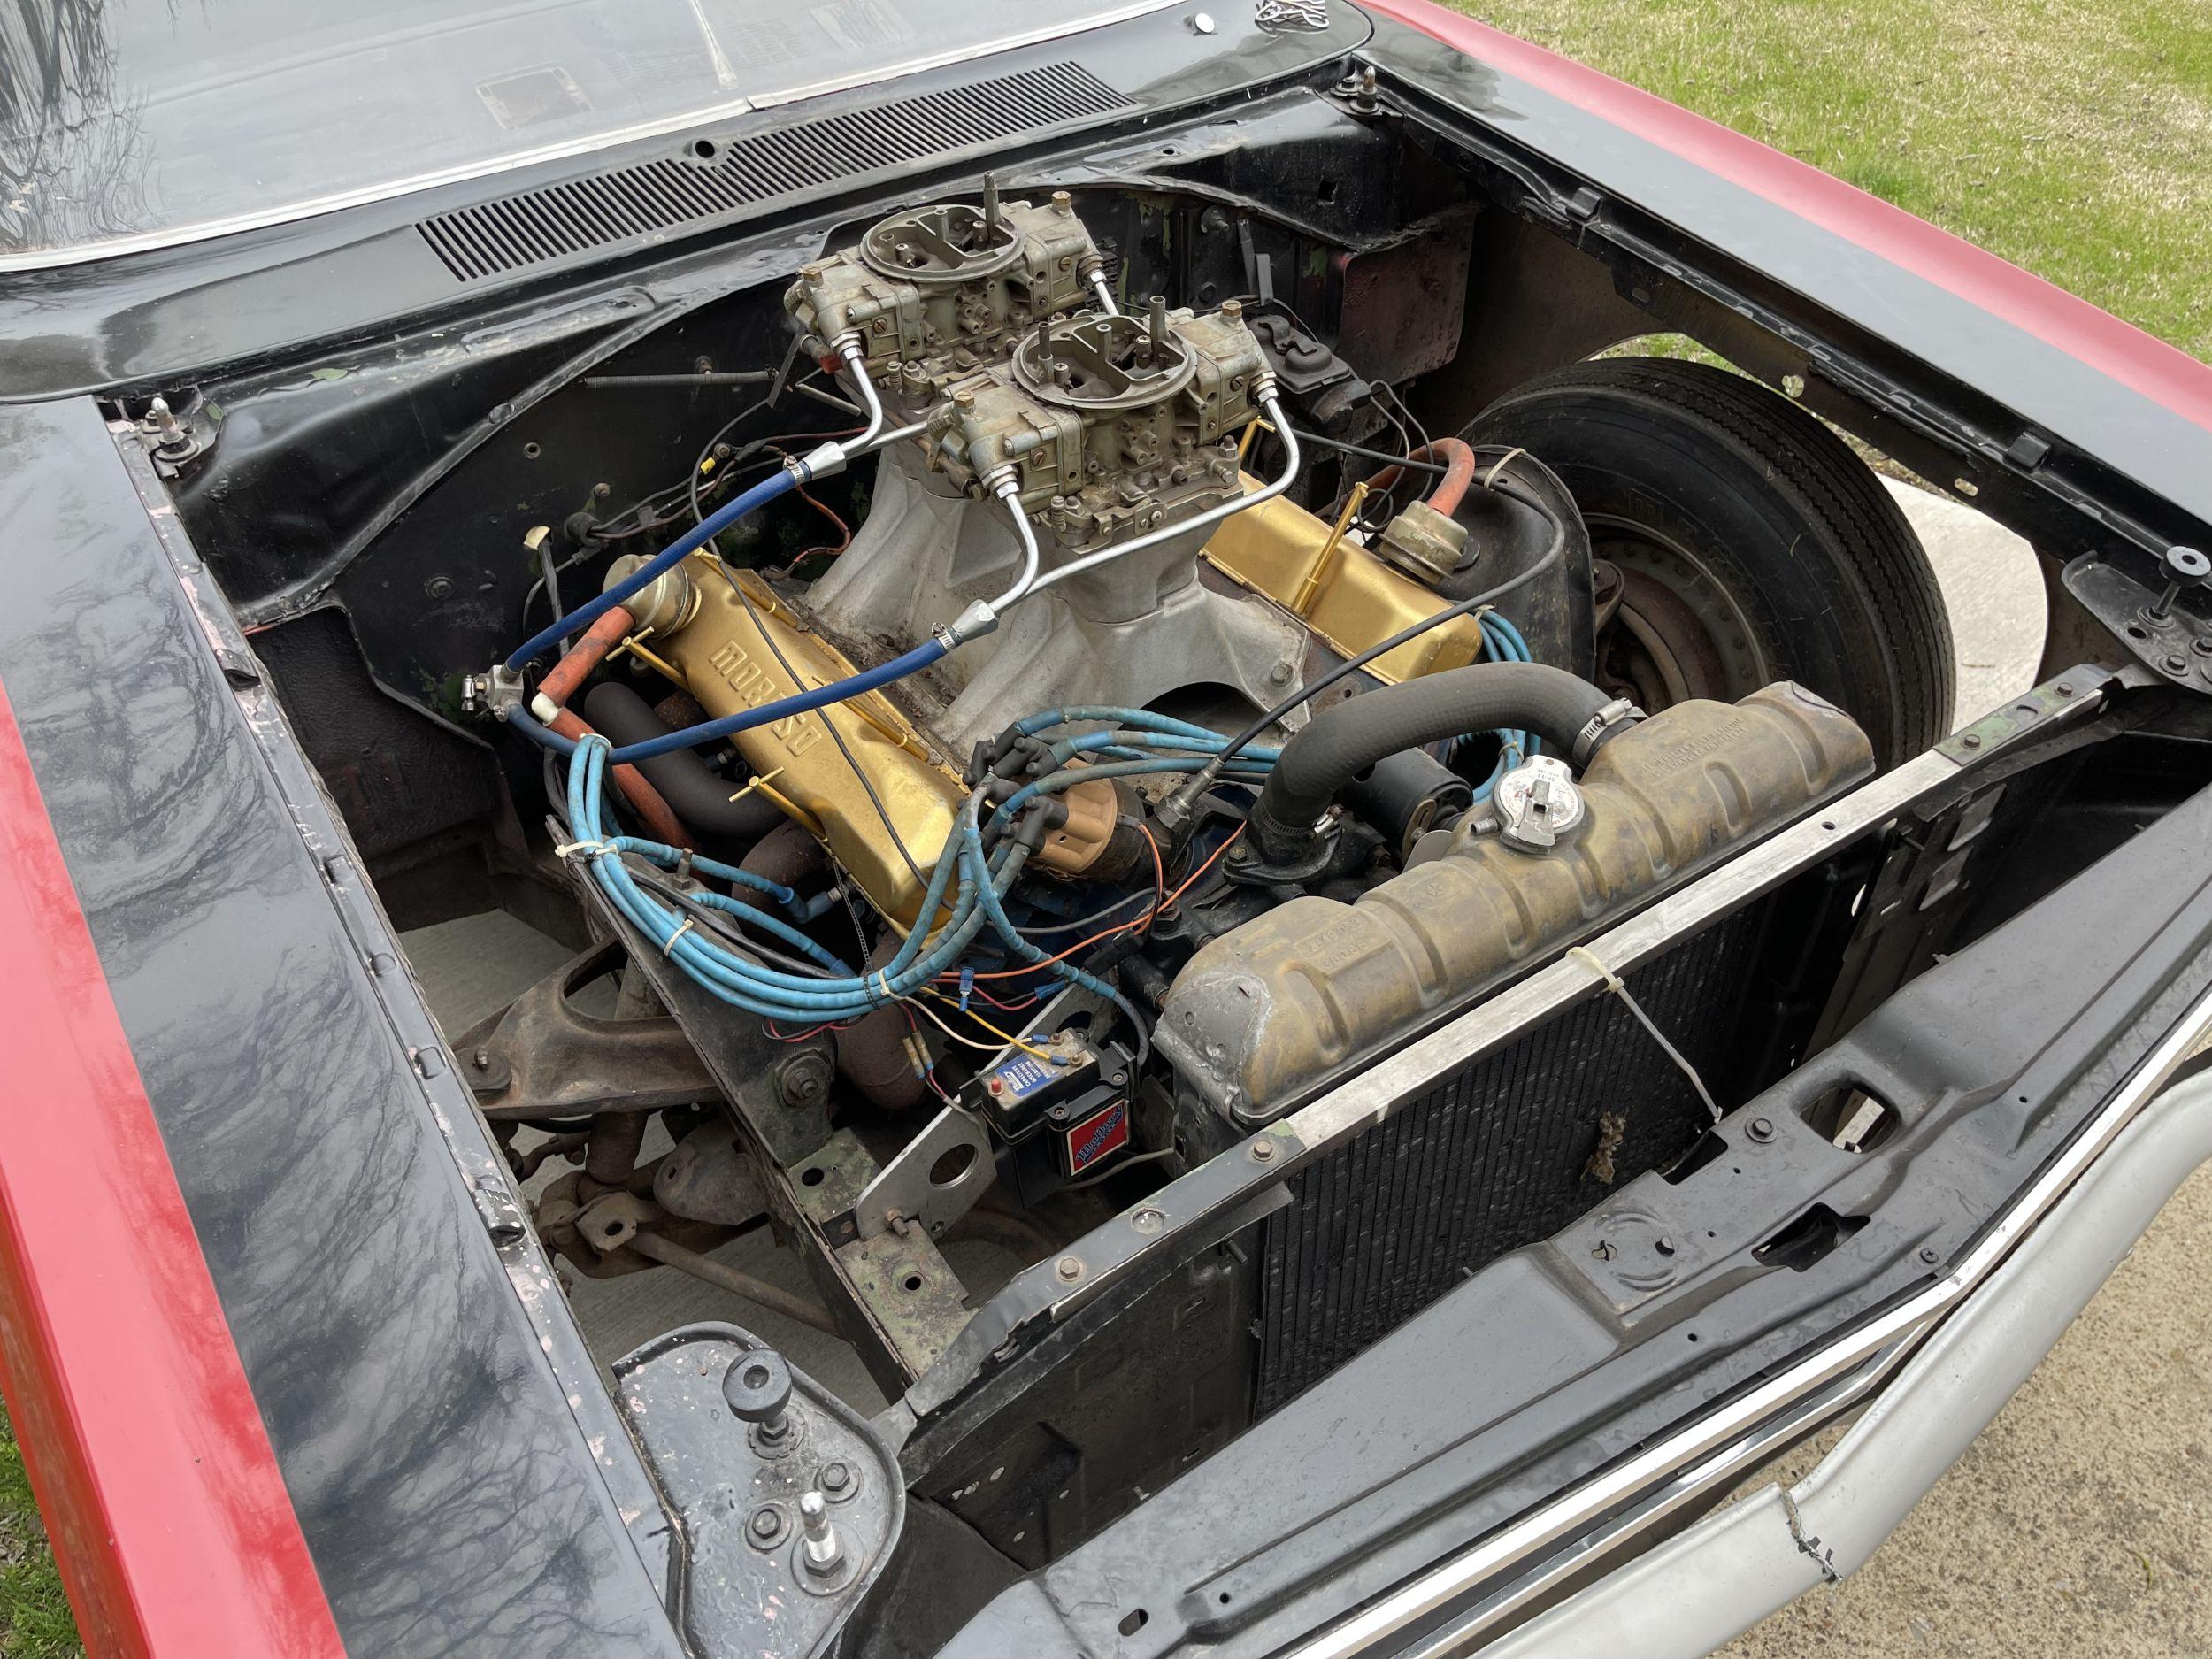 1969 Plymouth GTX Drag Car "The Recycler"